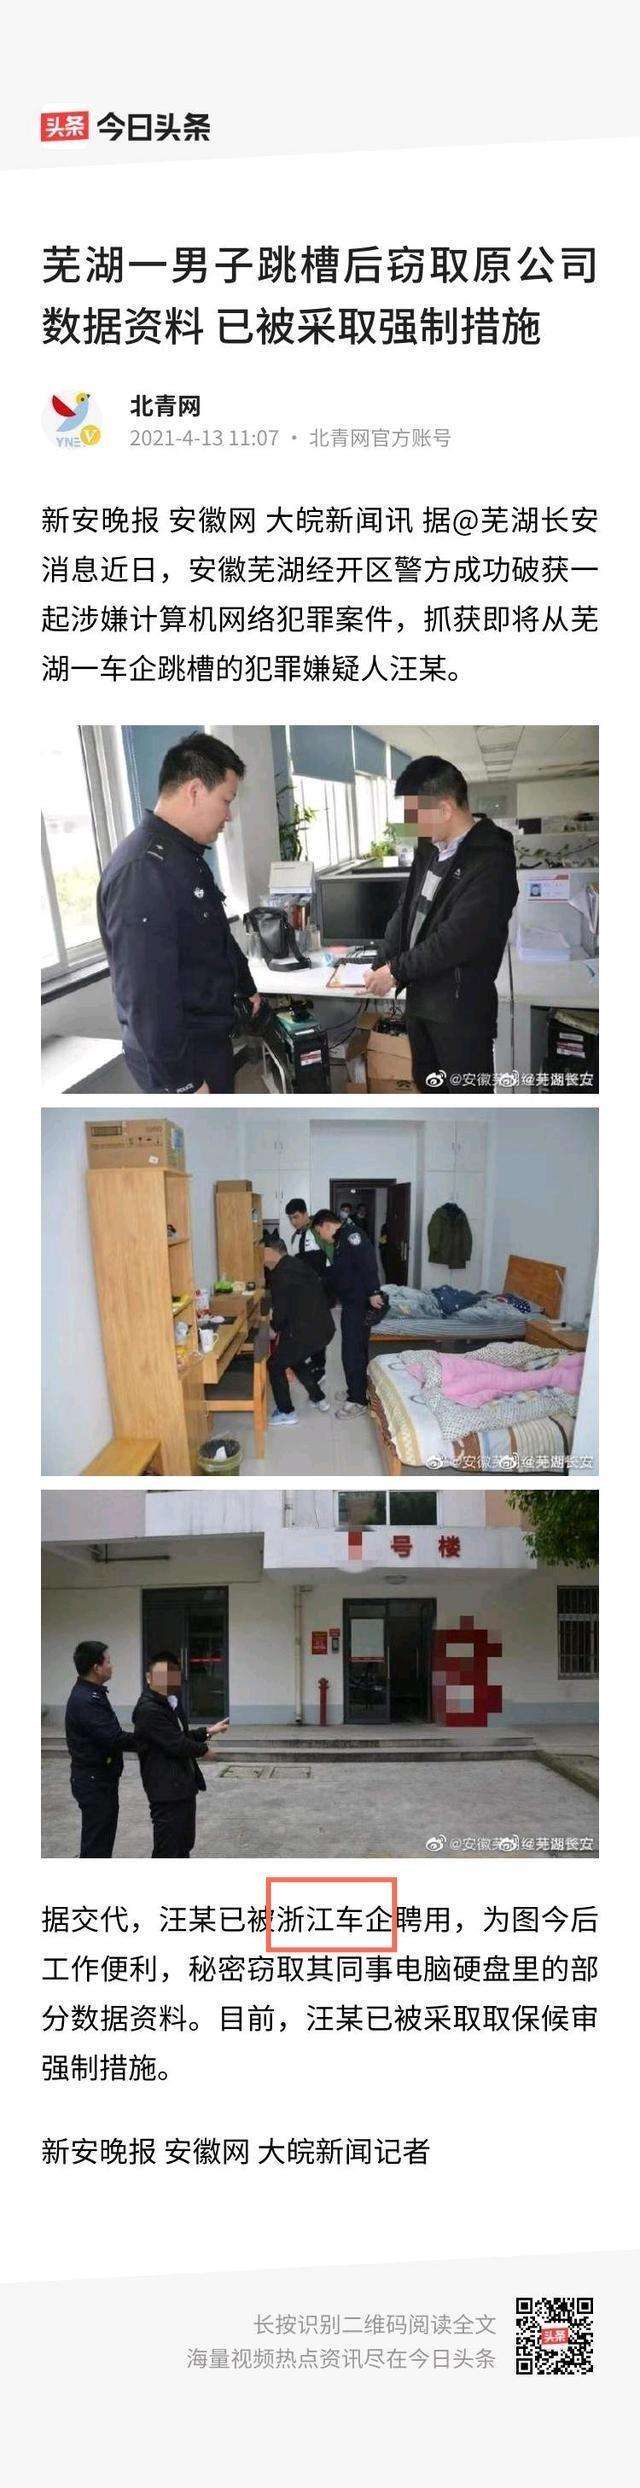 瑞虎8 plus phev 芜湖一车企男子跳槽到浙江某车企工作后竟窃取原公司私密资料。